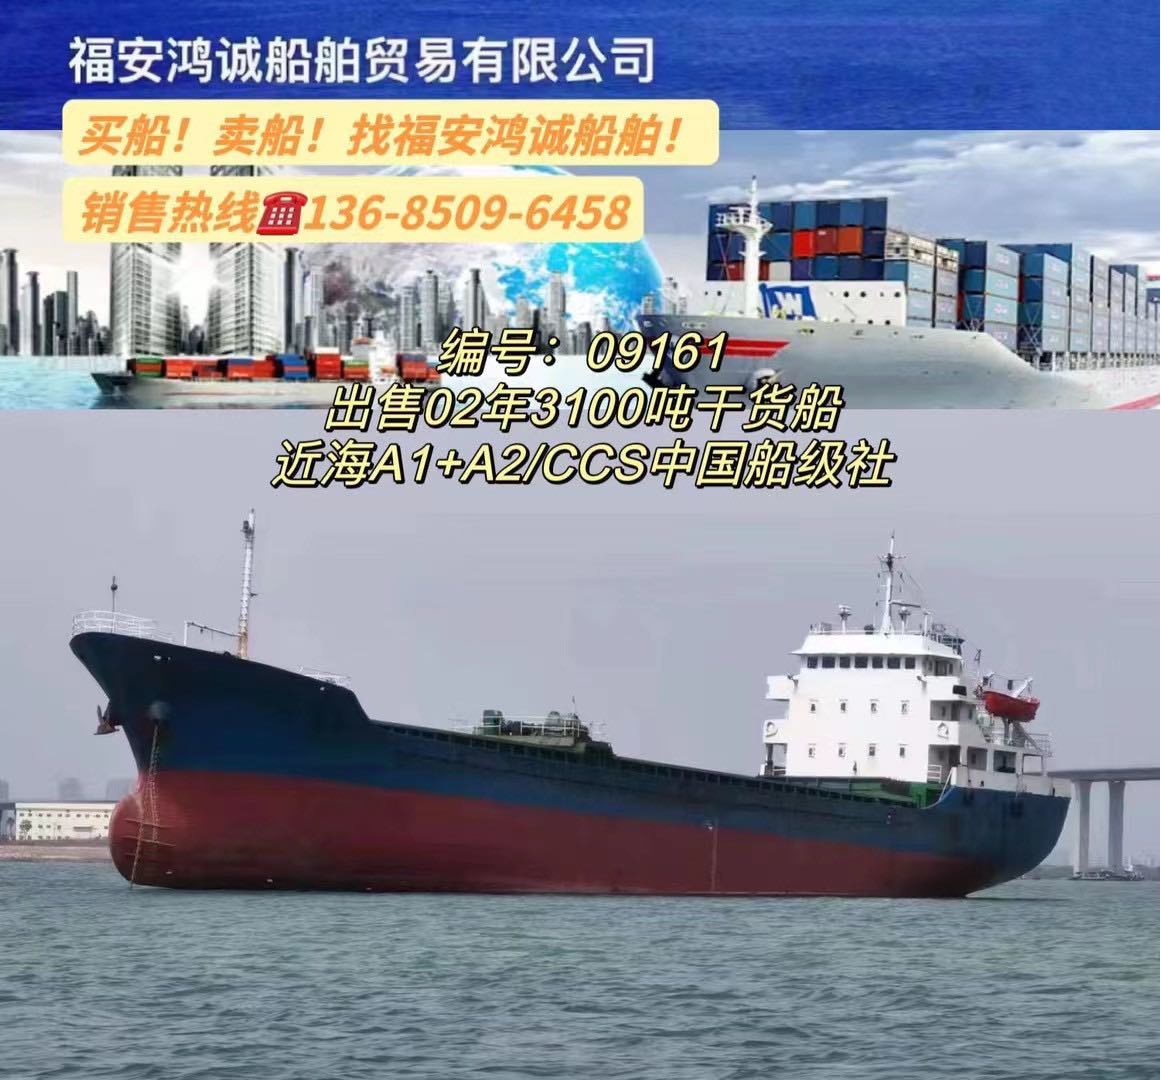 出售02年造3100吨干货船